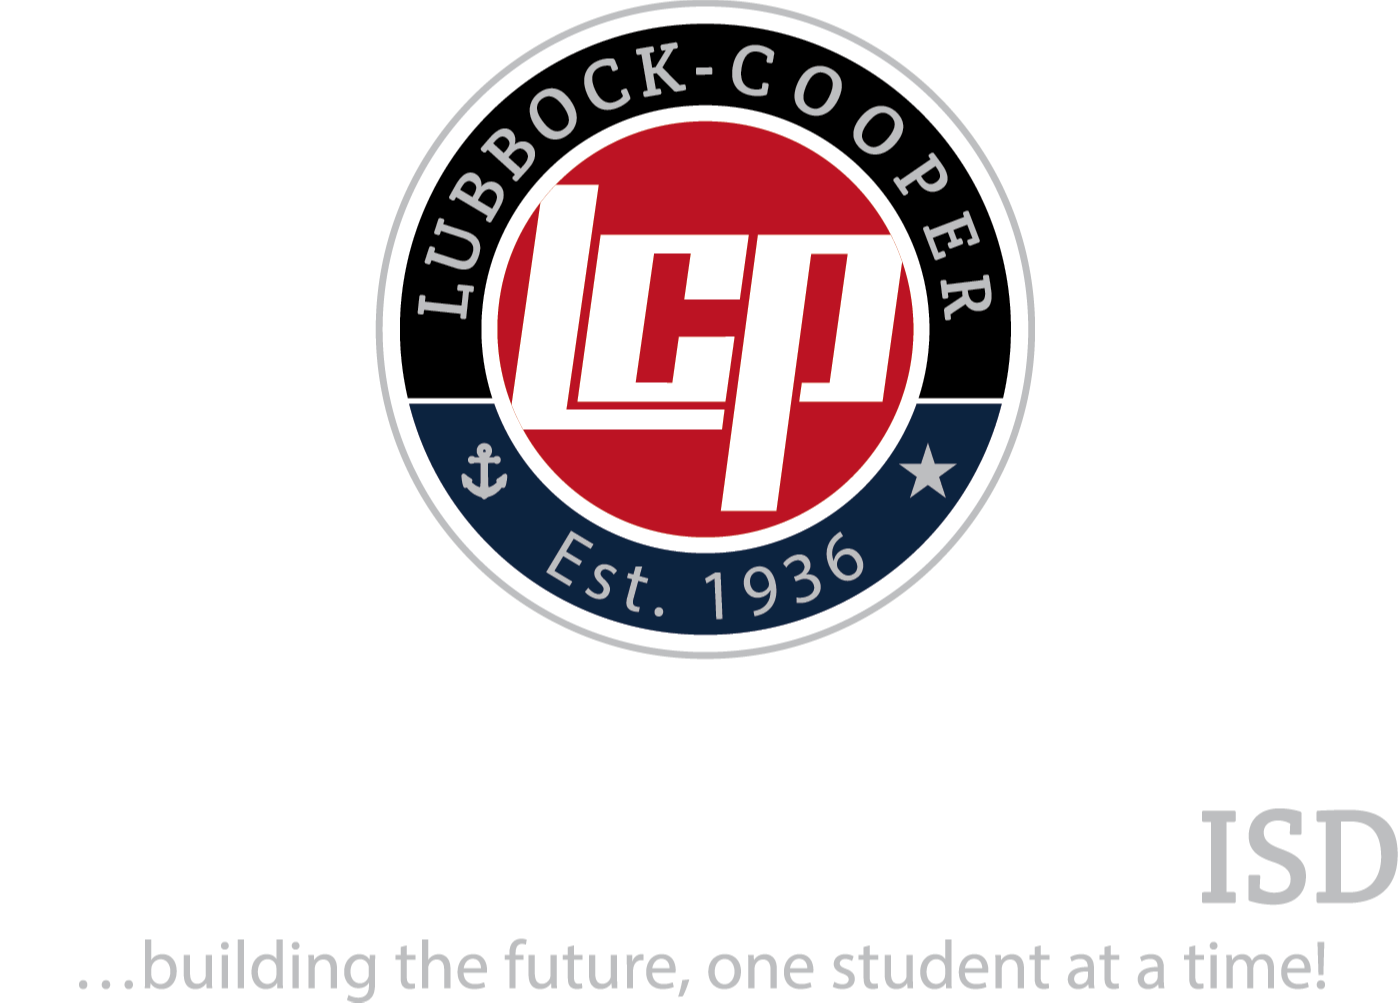 LubbockCooper ISD